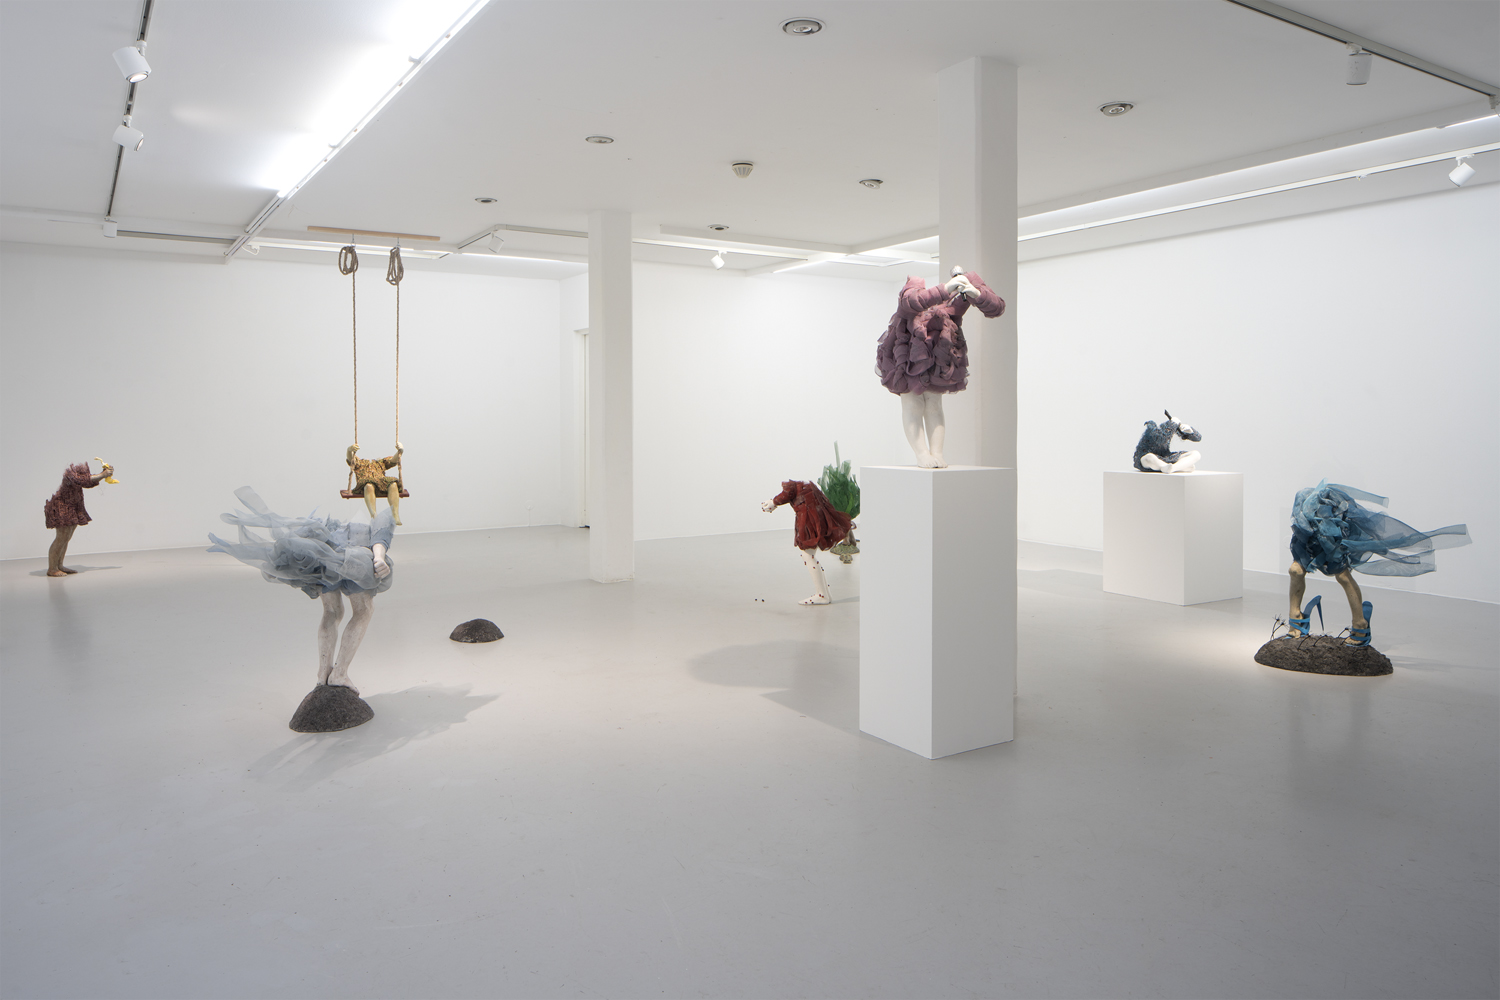 Norska Konstnären Lene Kilde visar skulptur av koppar och står på Galleri Thomassen i Göteborg